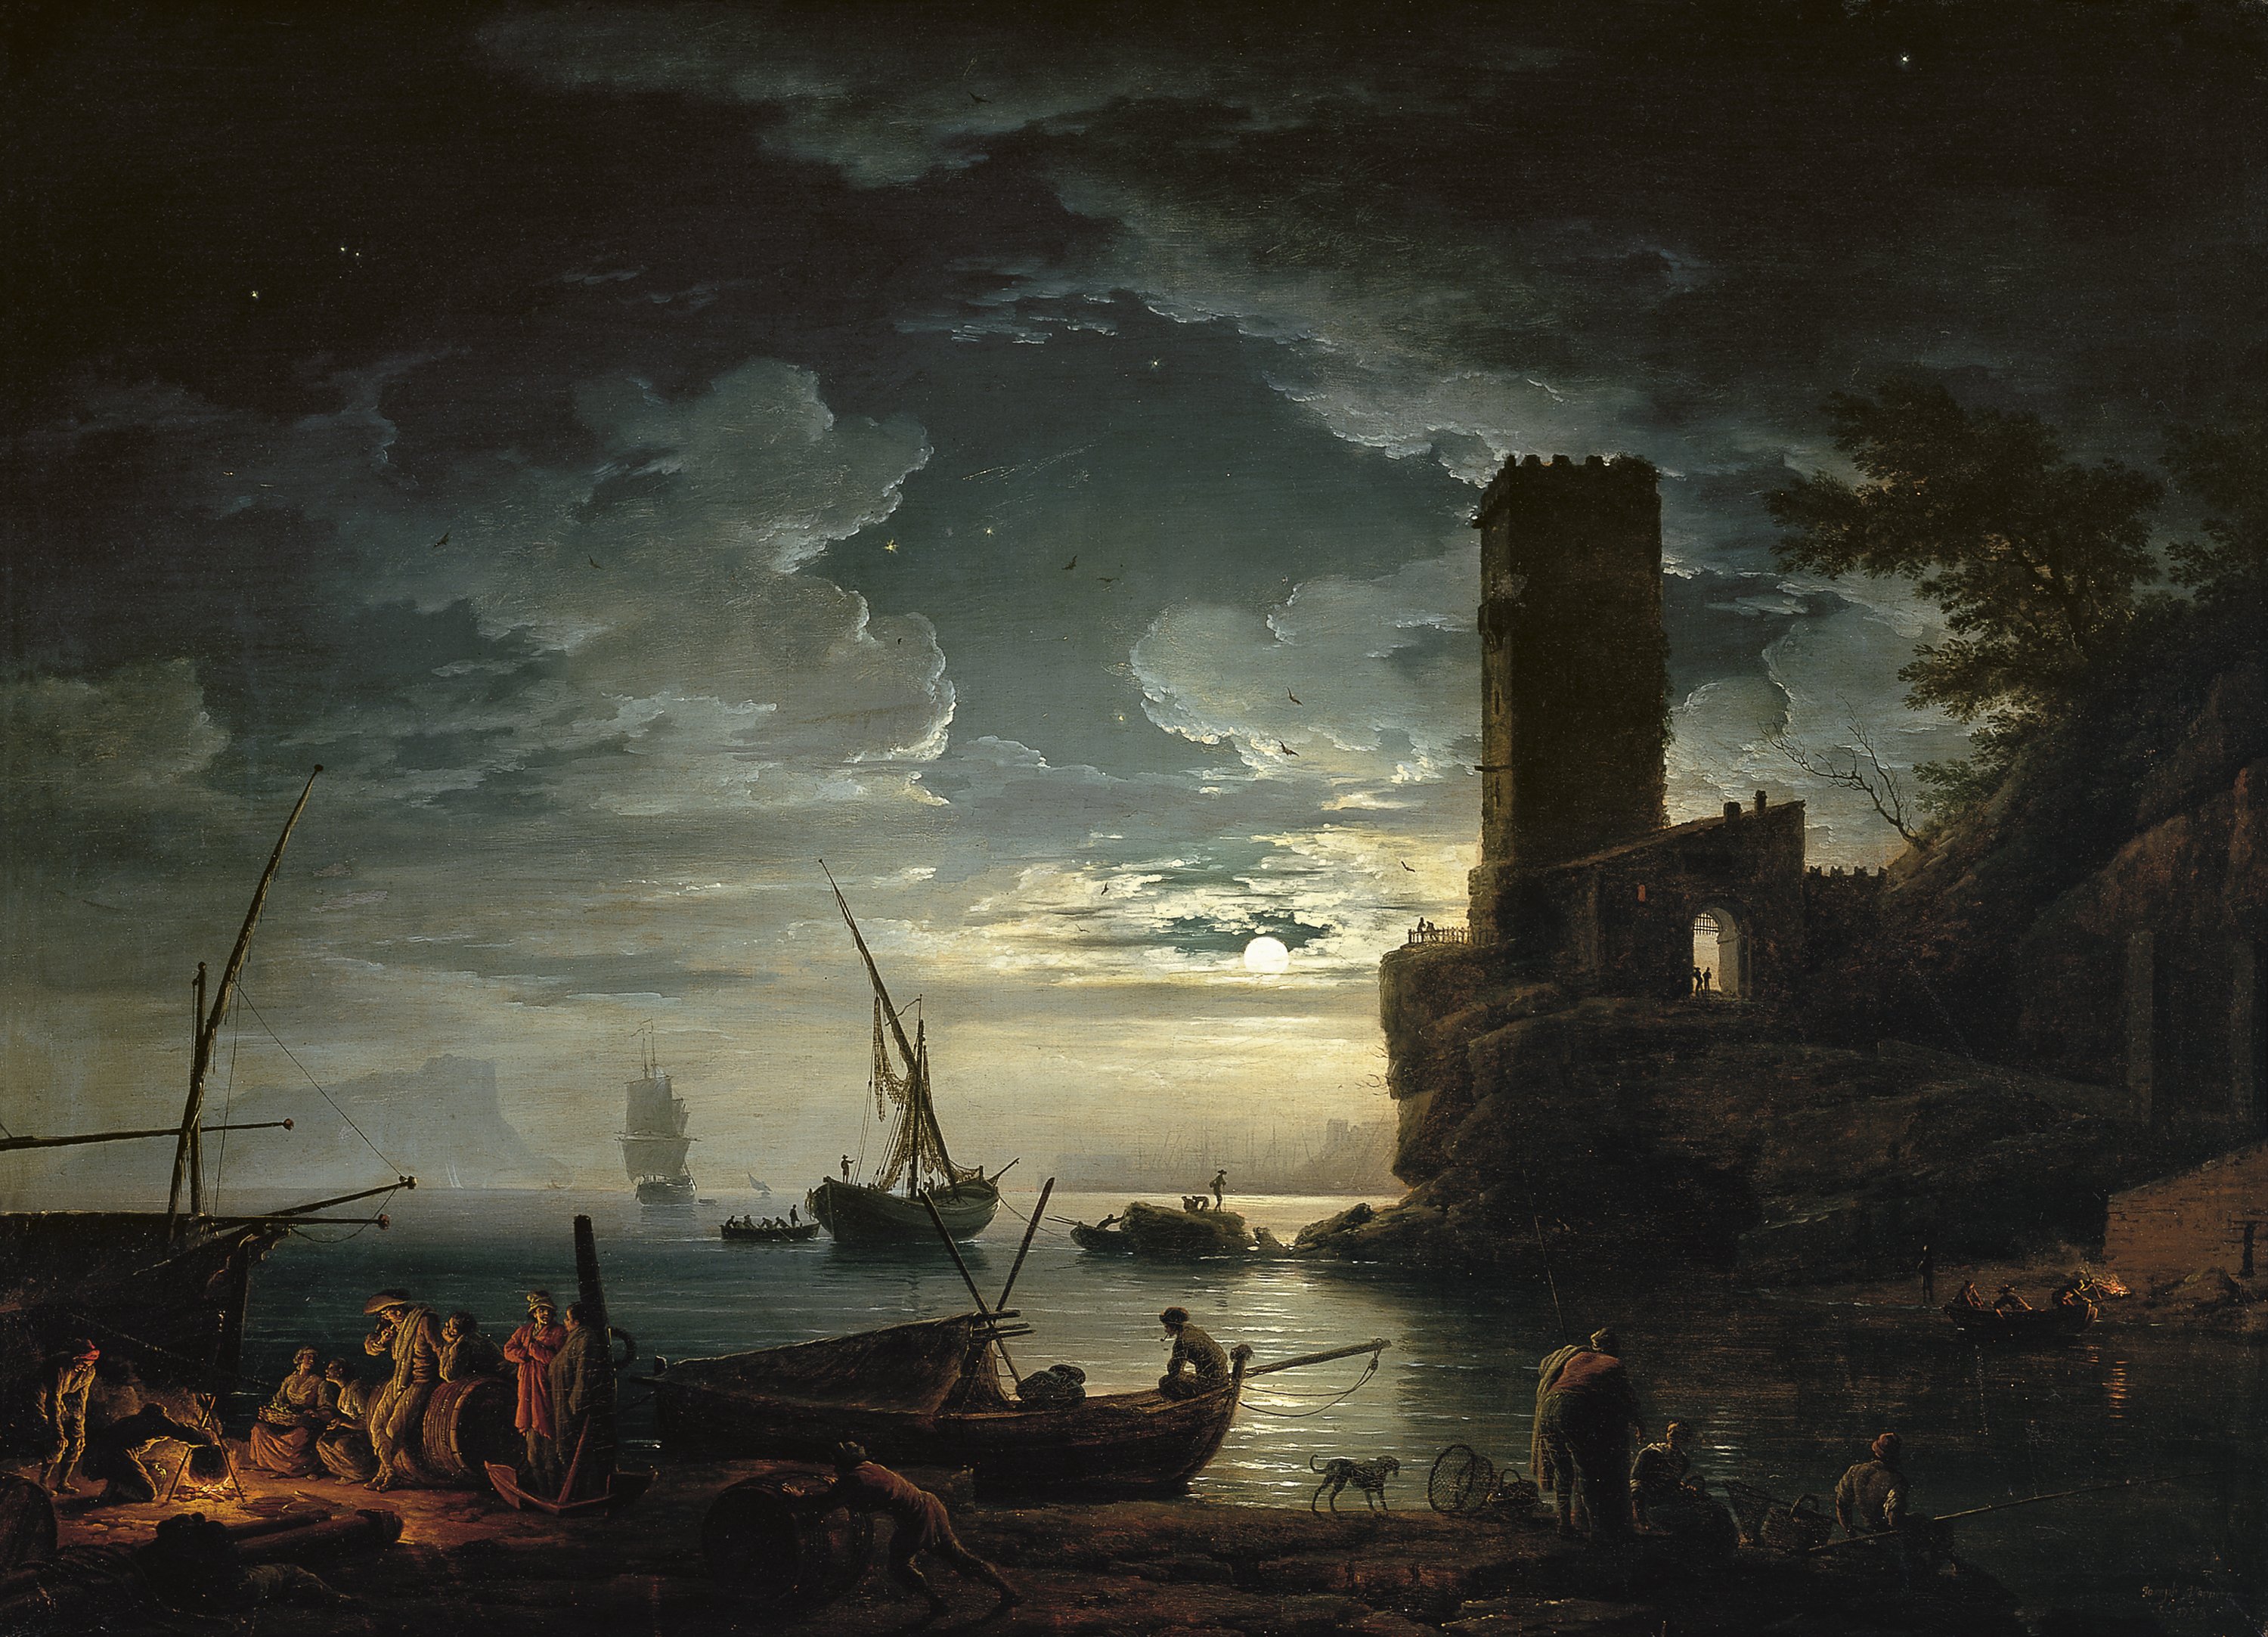 Night: a Mediterranean Coast Scene with Fishermen and Boats. Noche: escena de la costa mediterránea con pescadores y barcas, 1753